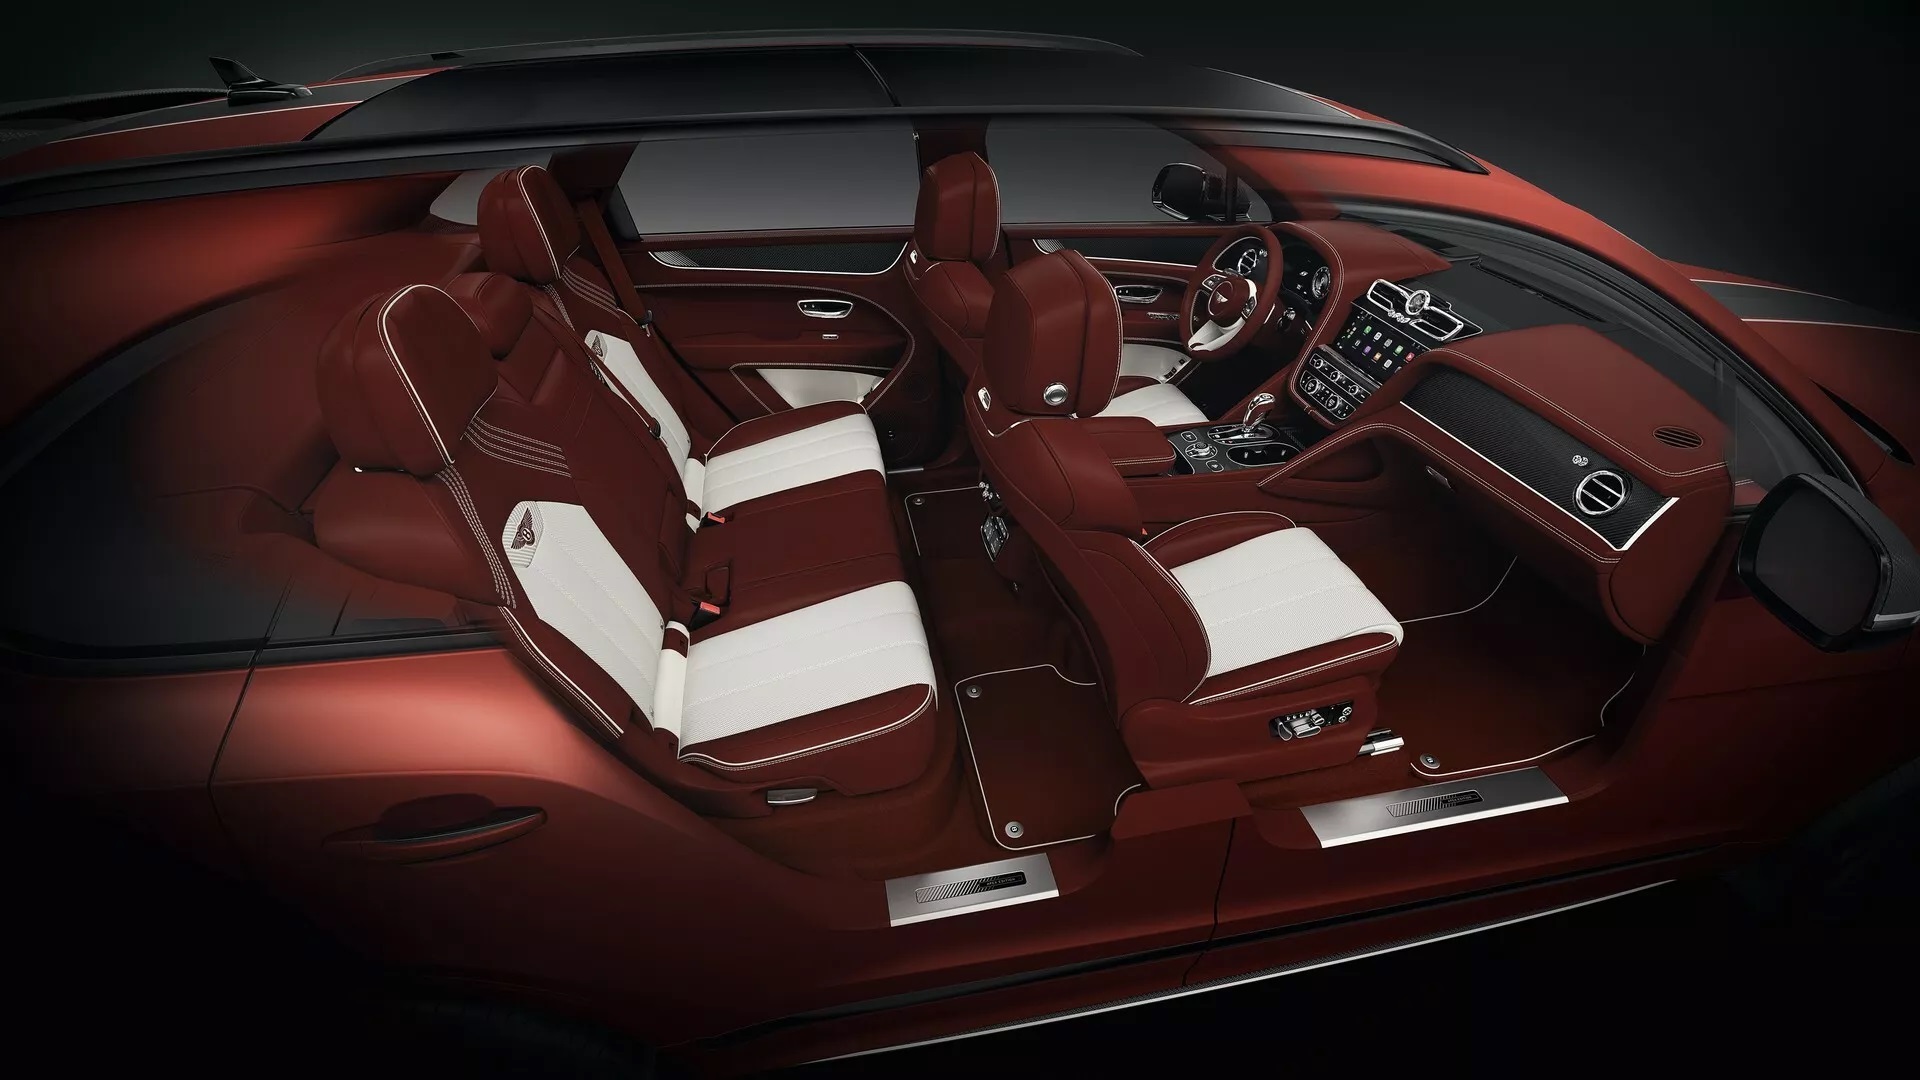 Bentley Bentayga có bản giới hạn 20 chiếc trên toàn cầu, mâm xe bằng sợi carbon bentayga-apex-edition-6.jpg